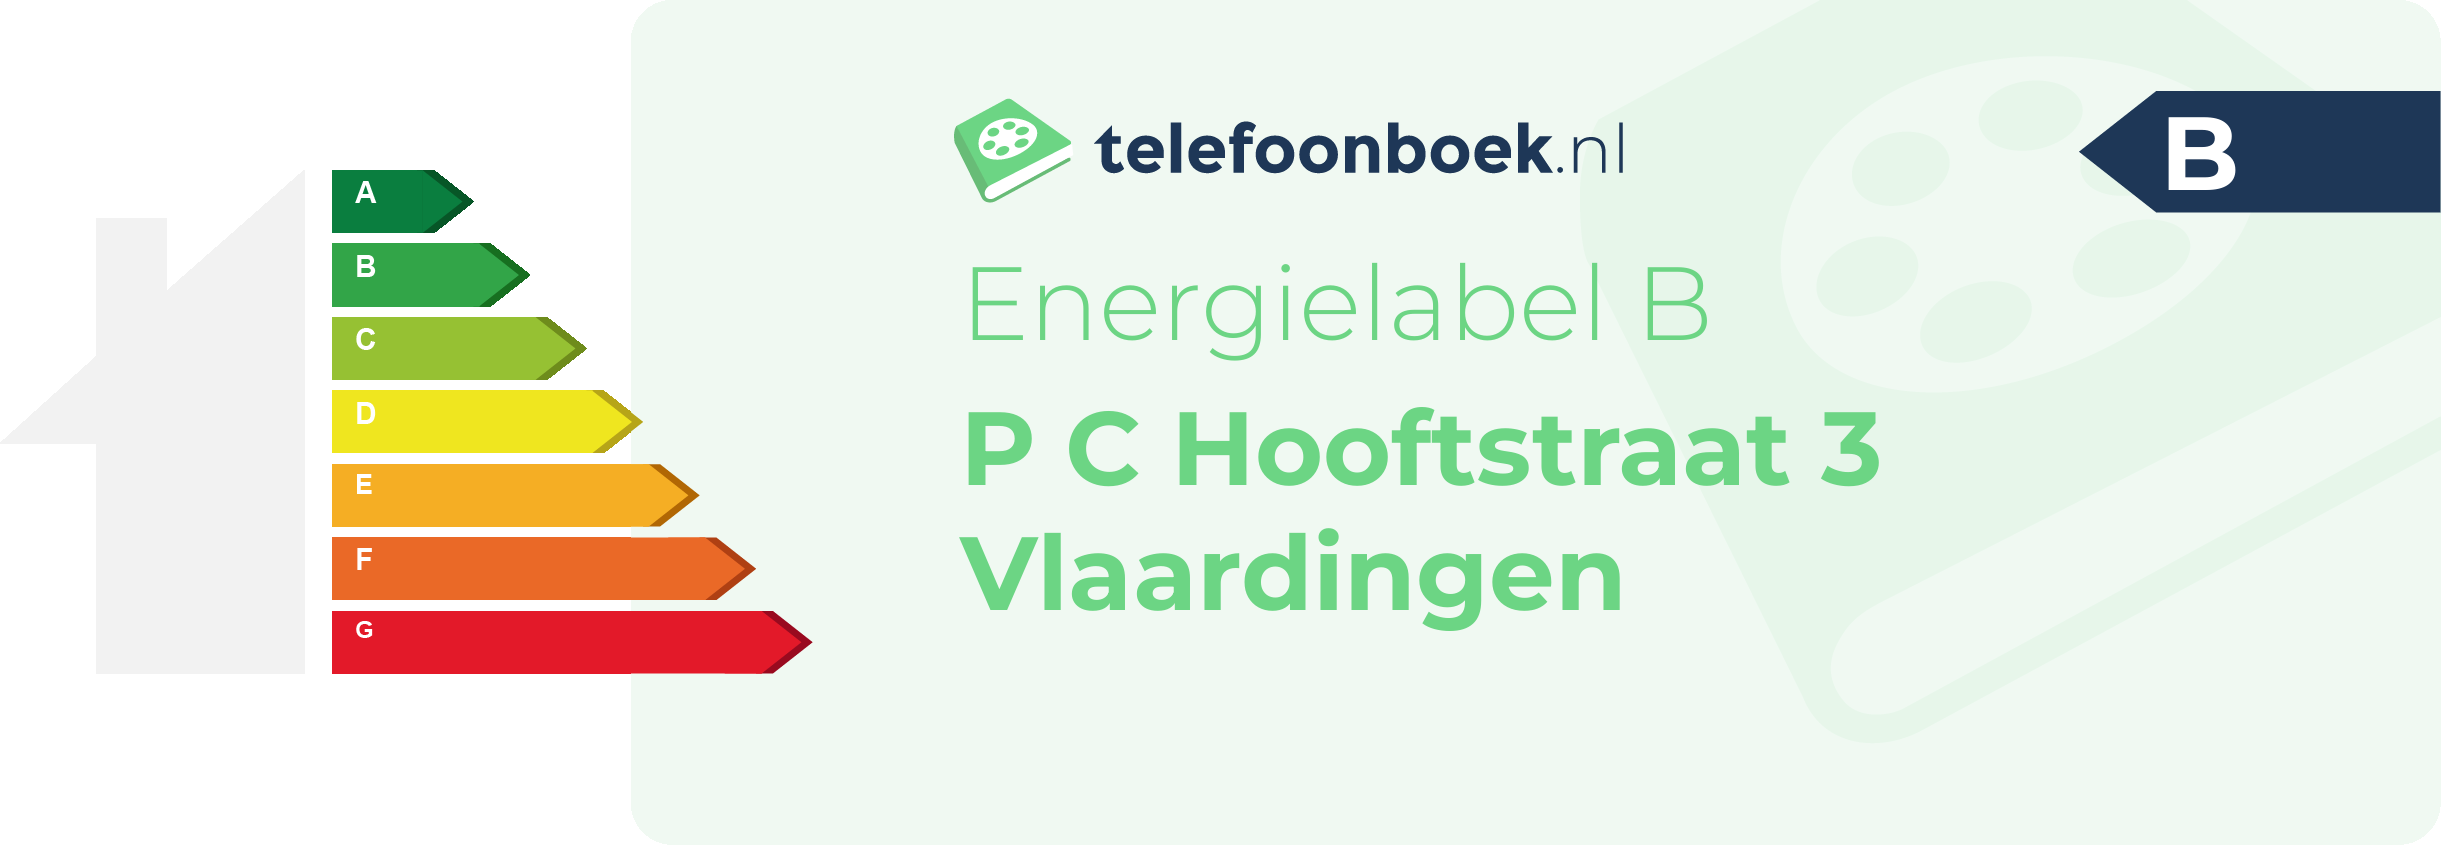 Energielabel P C Hooftstraat 3 Vlaardingen